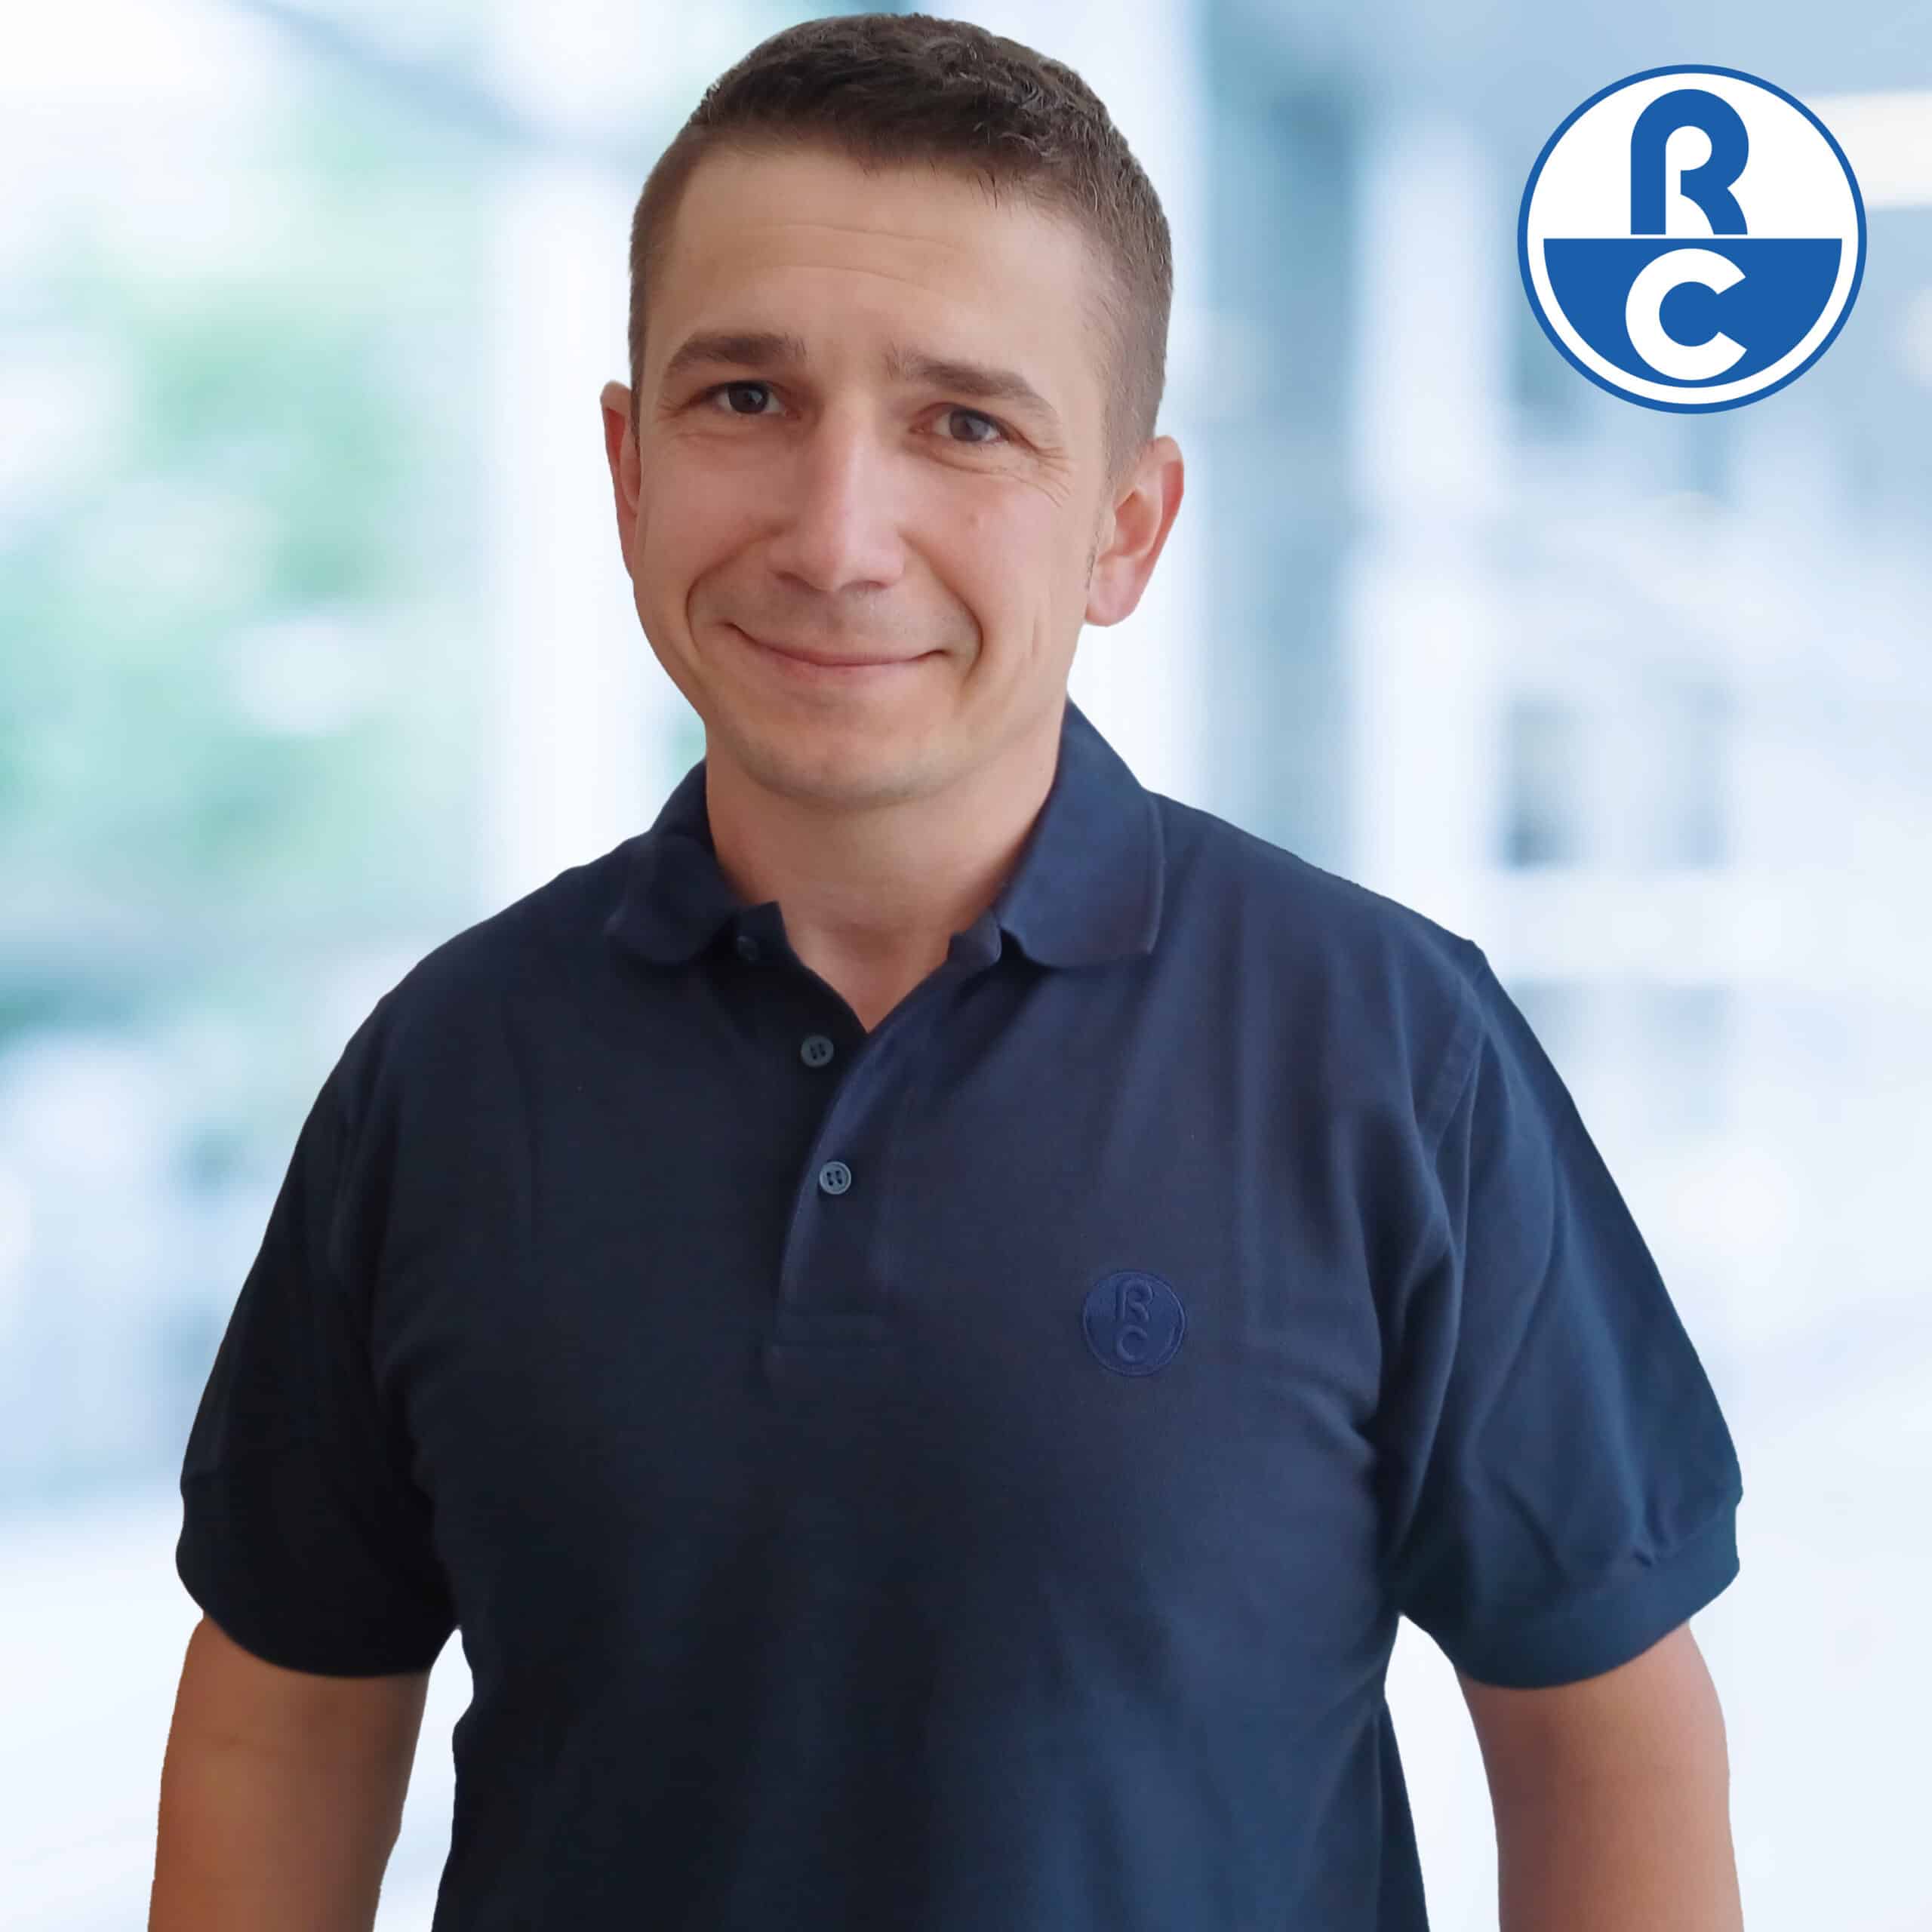 Marcin Spallek_Mitarbeiter Rhein-Chemotechnik GmbH_Verkaufsgebiet Polen